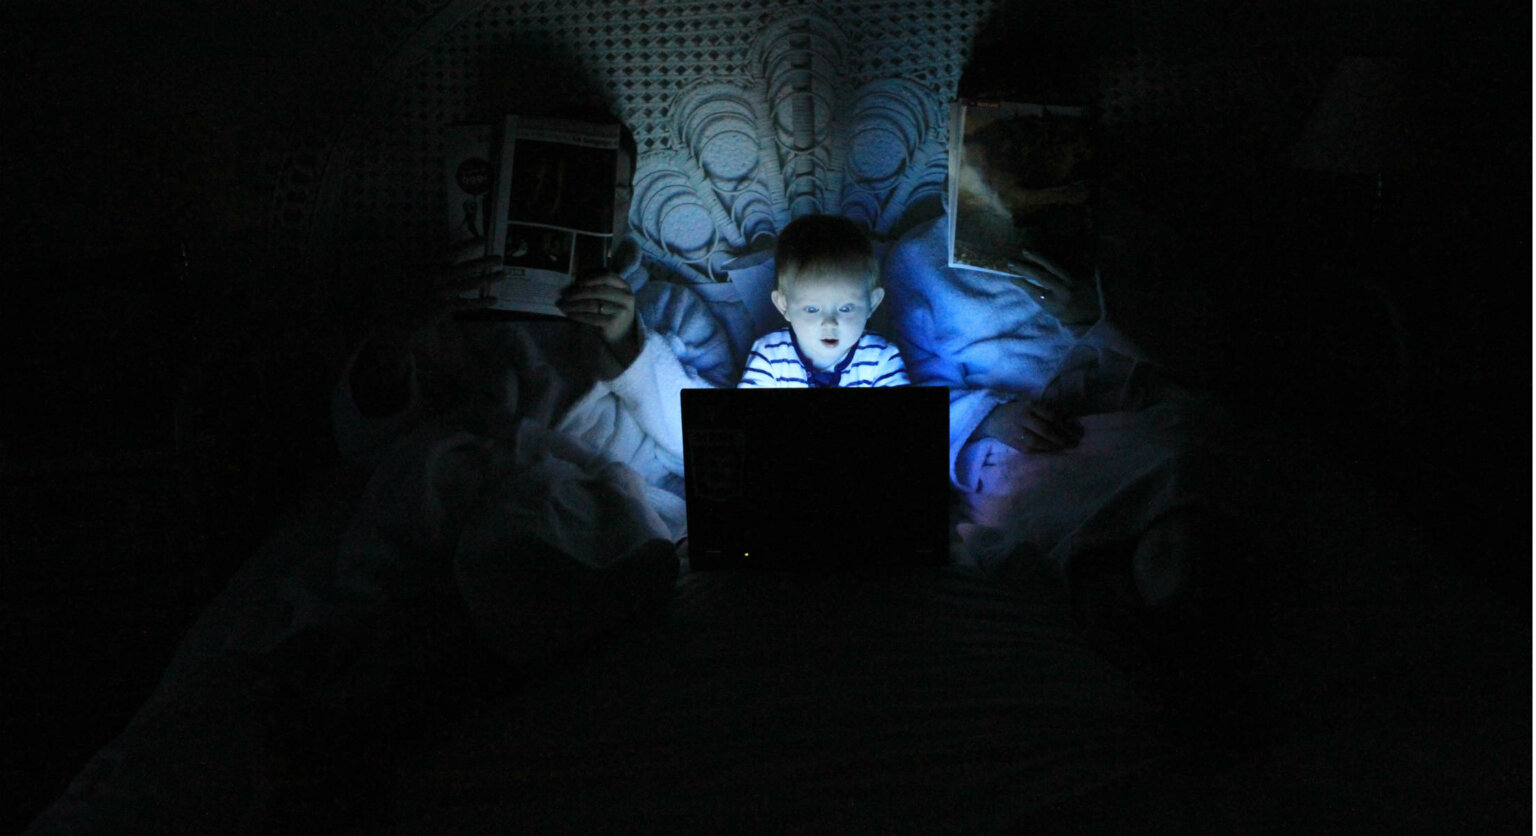 ciberseguridad como proteger a los niños en internet